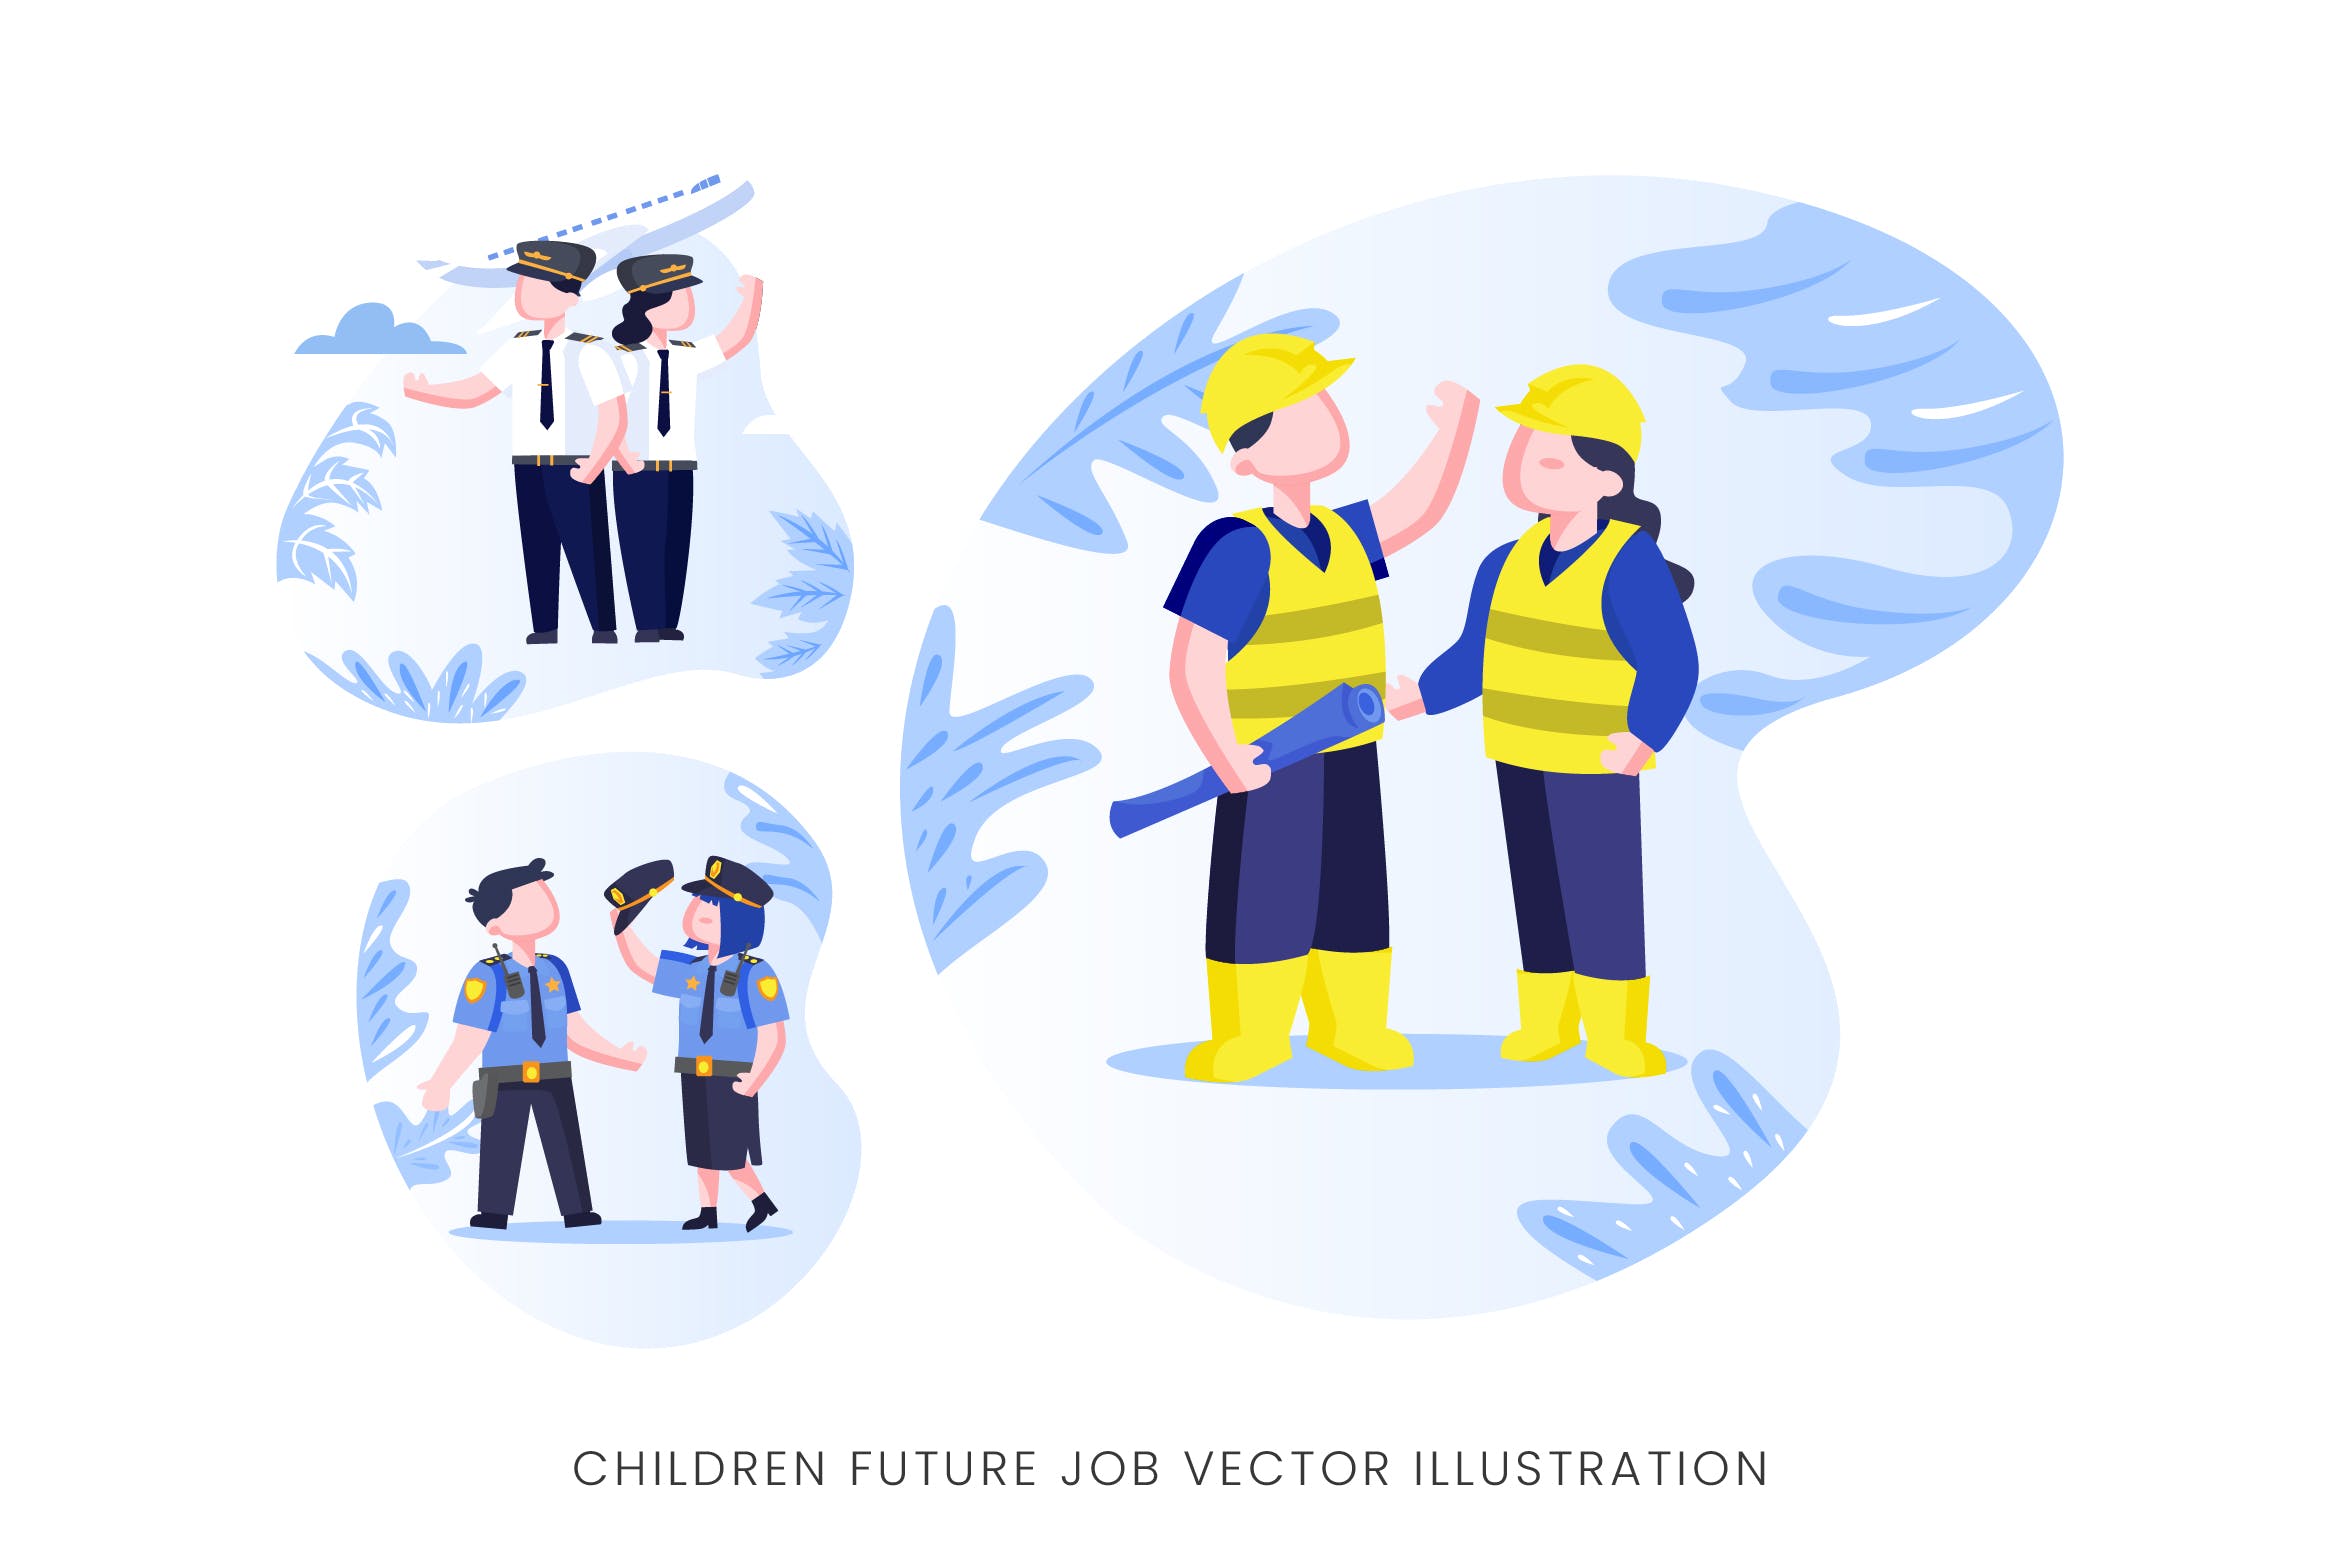 儿童未来职业人物形象第一素材精选手绘插画矢量素材 Children Future Job Vector Character Set插图